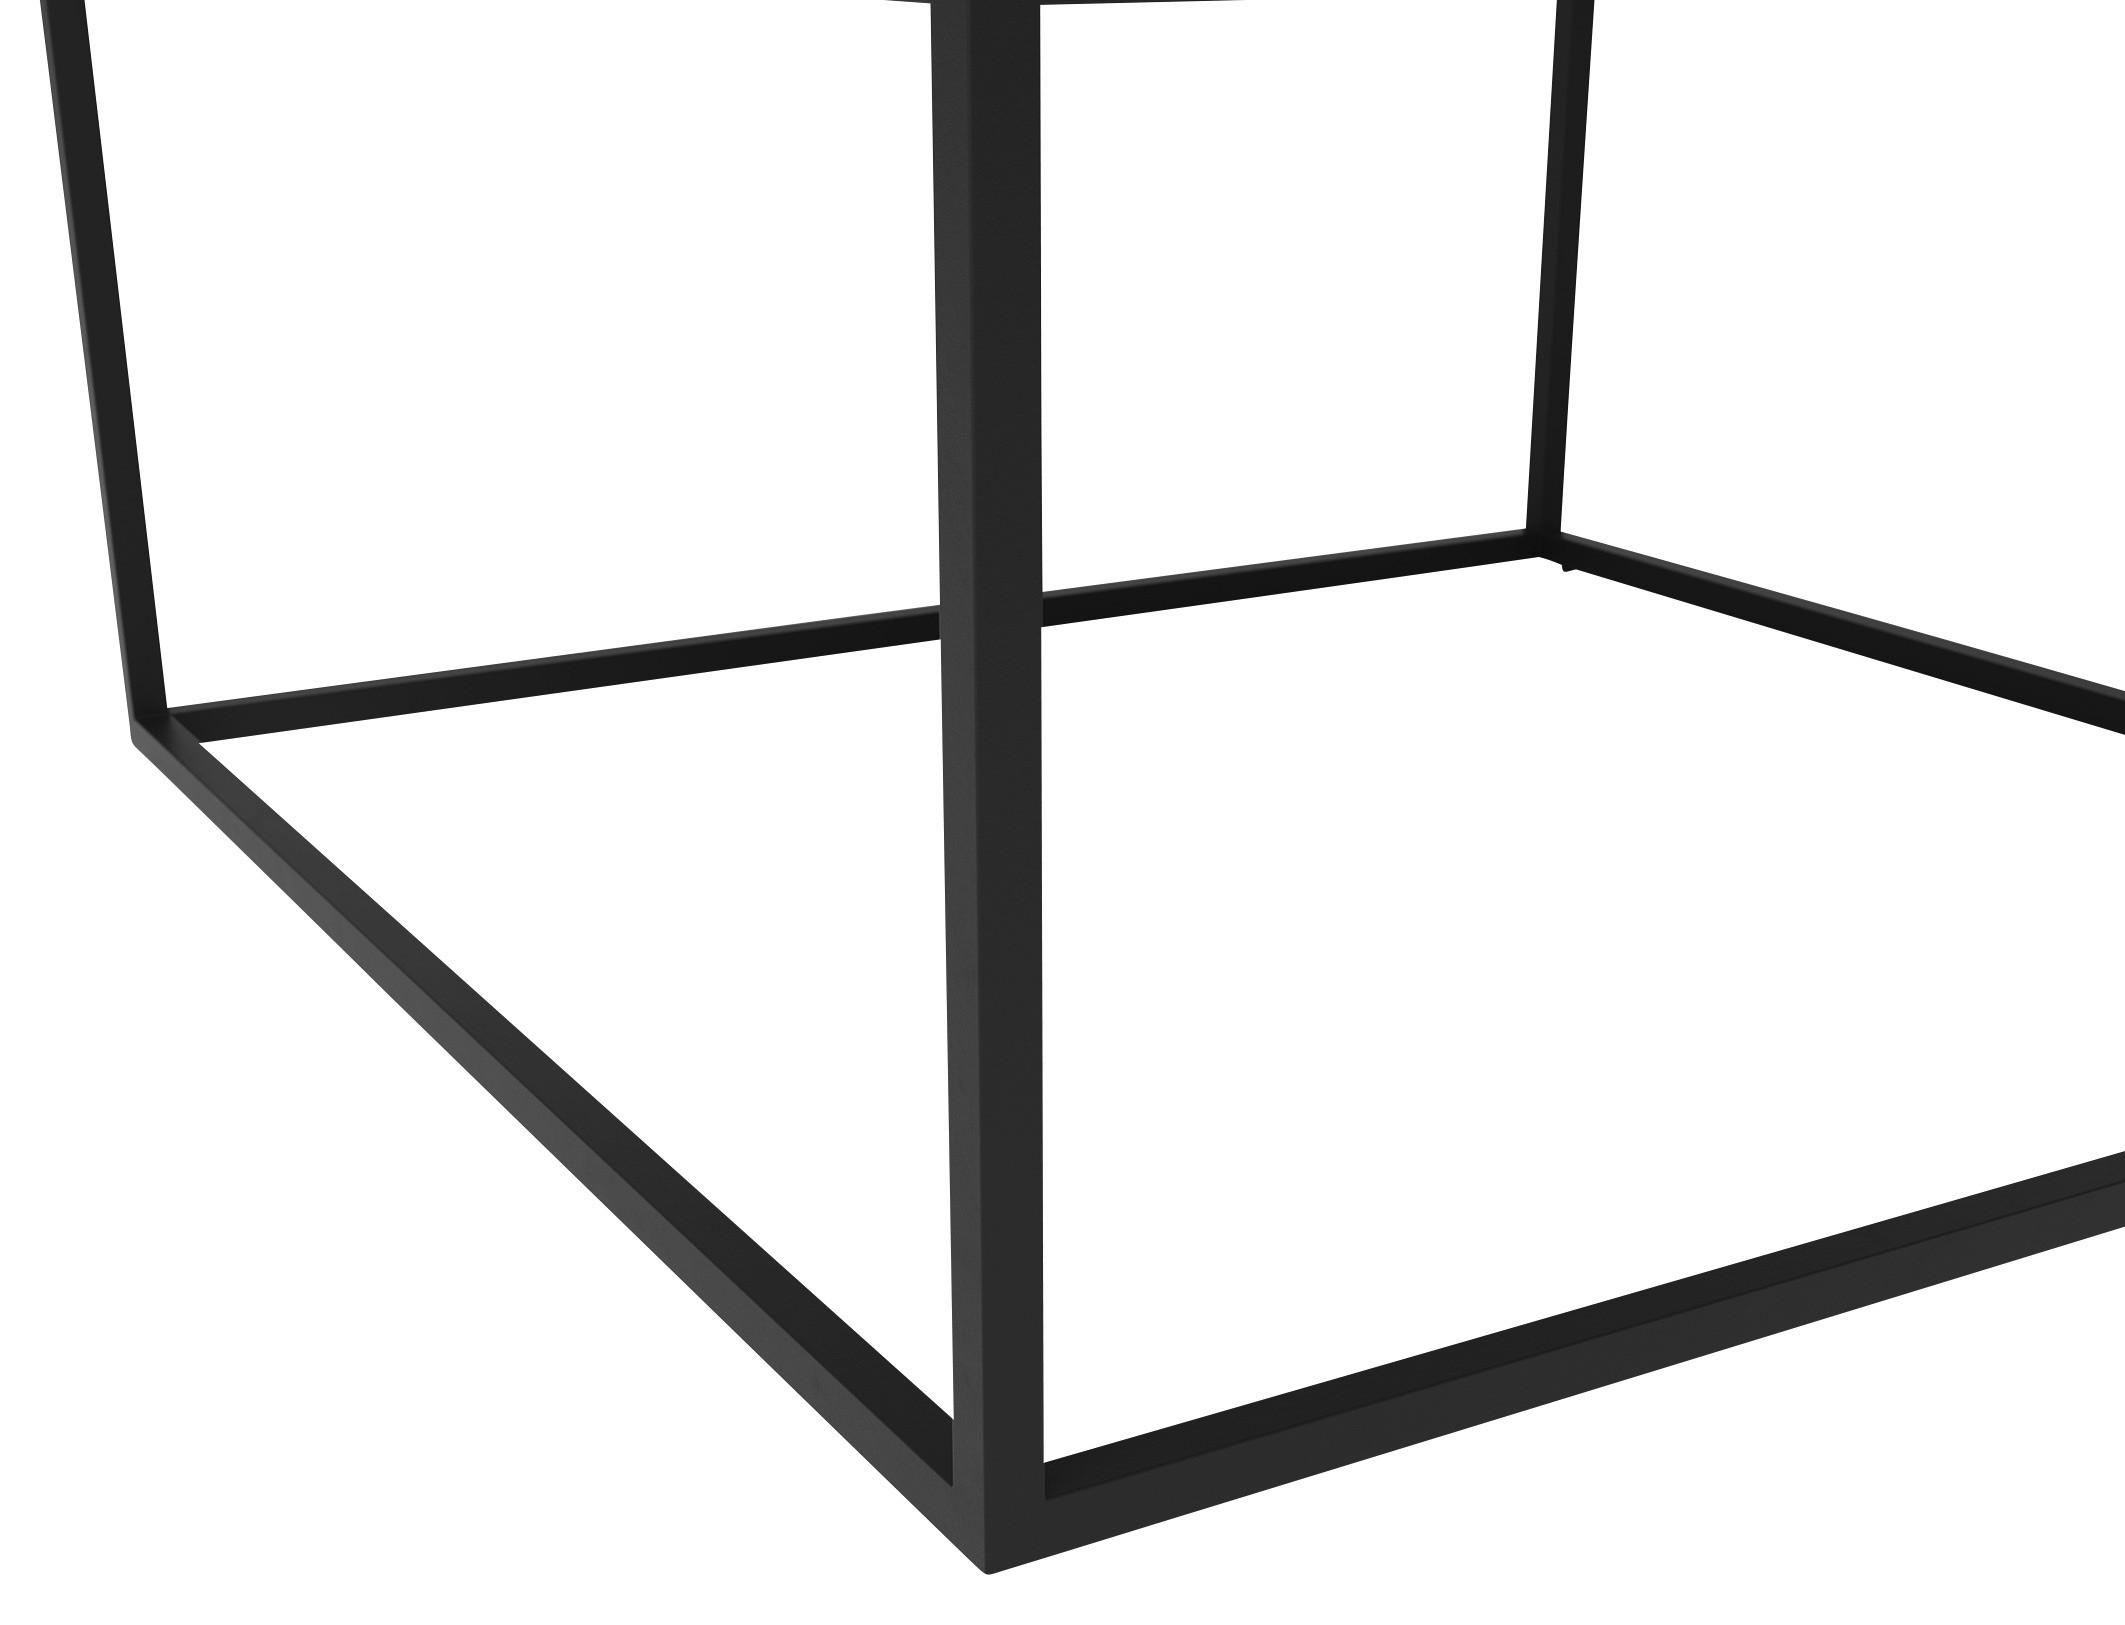 COUCHTISCH quadratisch Grau, Schwarz 75/75/45 cm  - Schwarz/Grau, Design, Glas/Metall (75/75/45cm) - Joop!